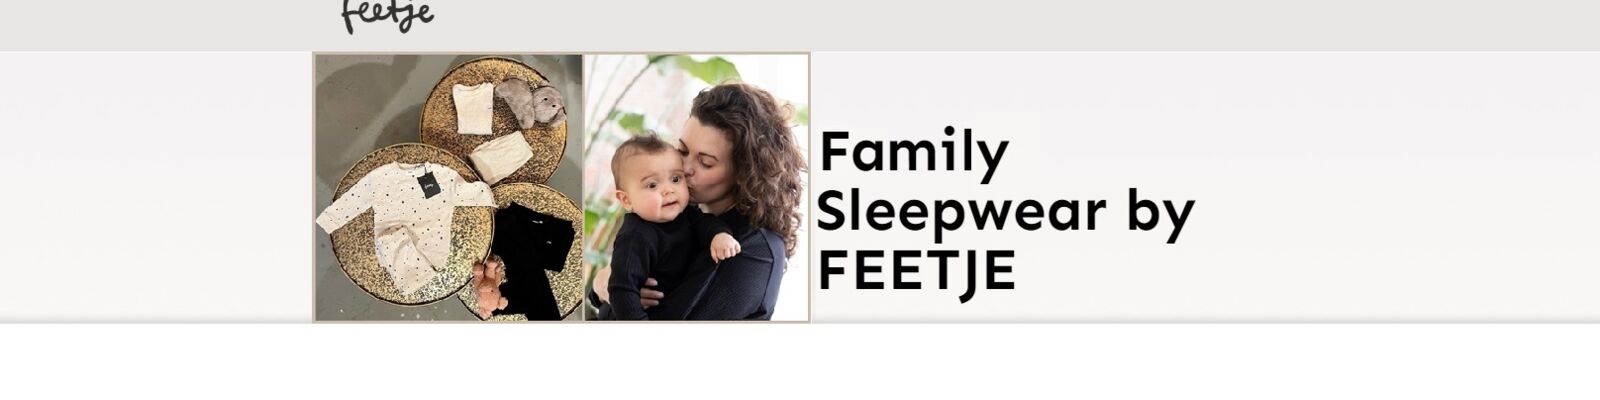 Feetje family sleepware slider.jpg